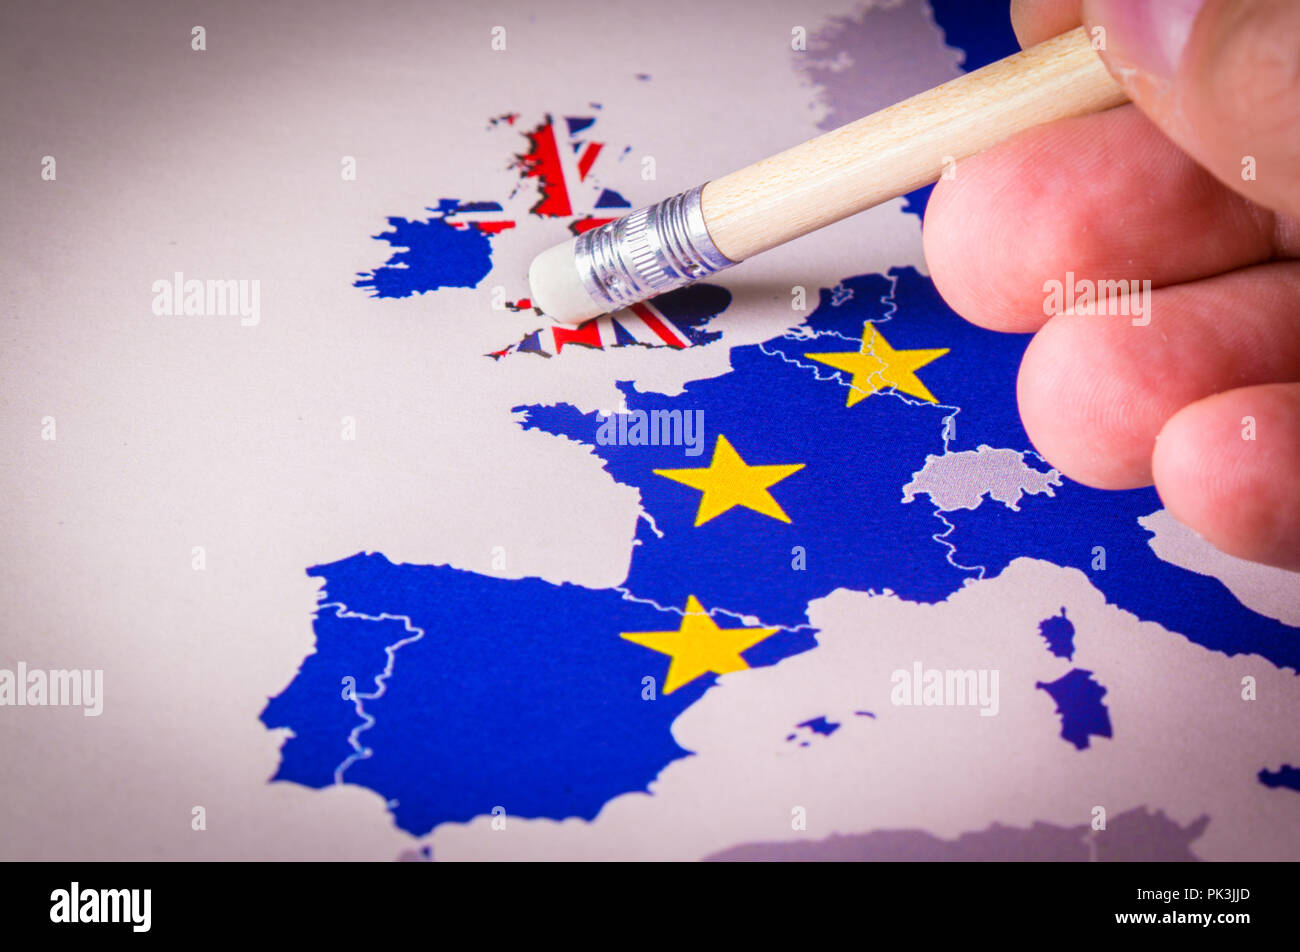 Karte Der Europaischen Union Mit Grossbritannien Durch Radiergummi Entfernt Konzept Der Brexit Wie Grossbritannien Abstimmung Zu Verlassen Stockfotografie Alamy